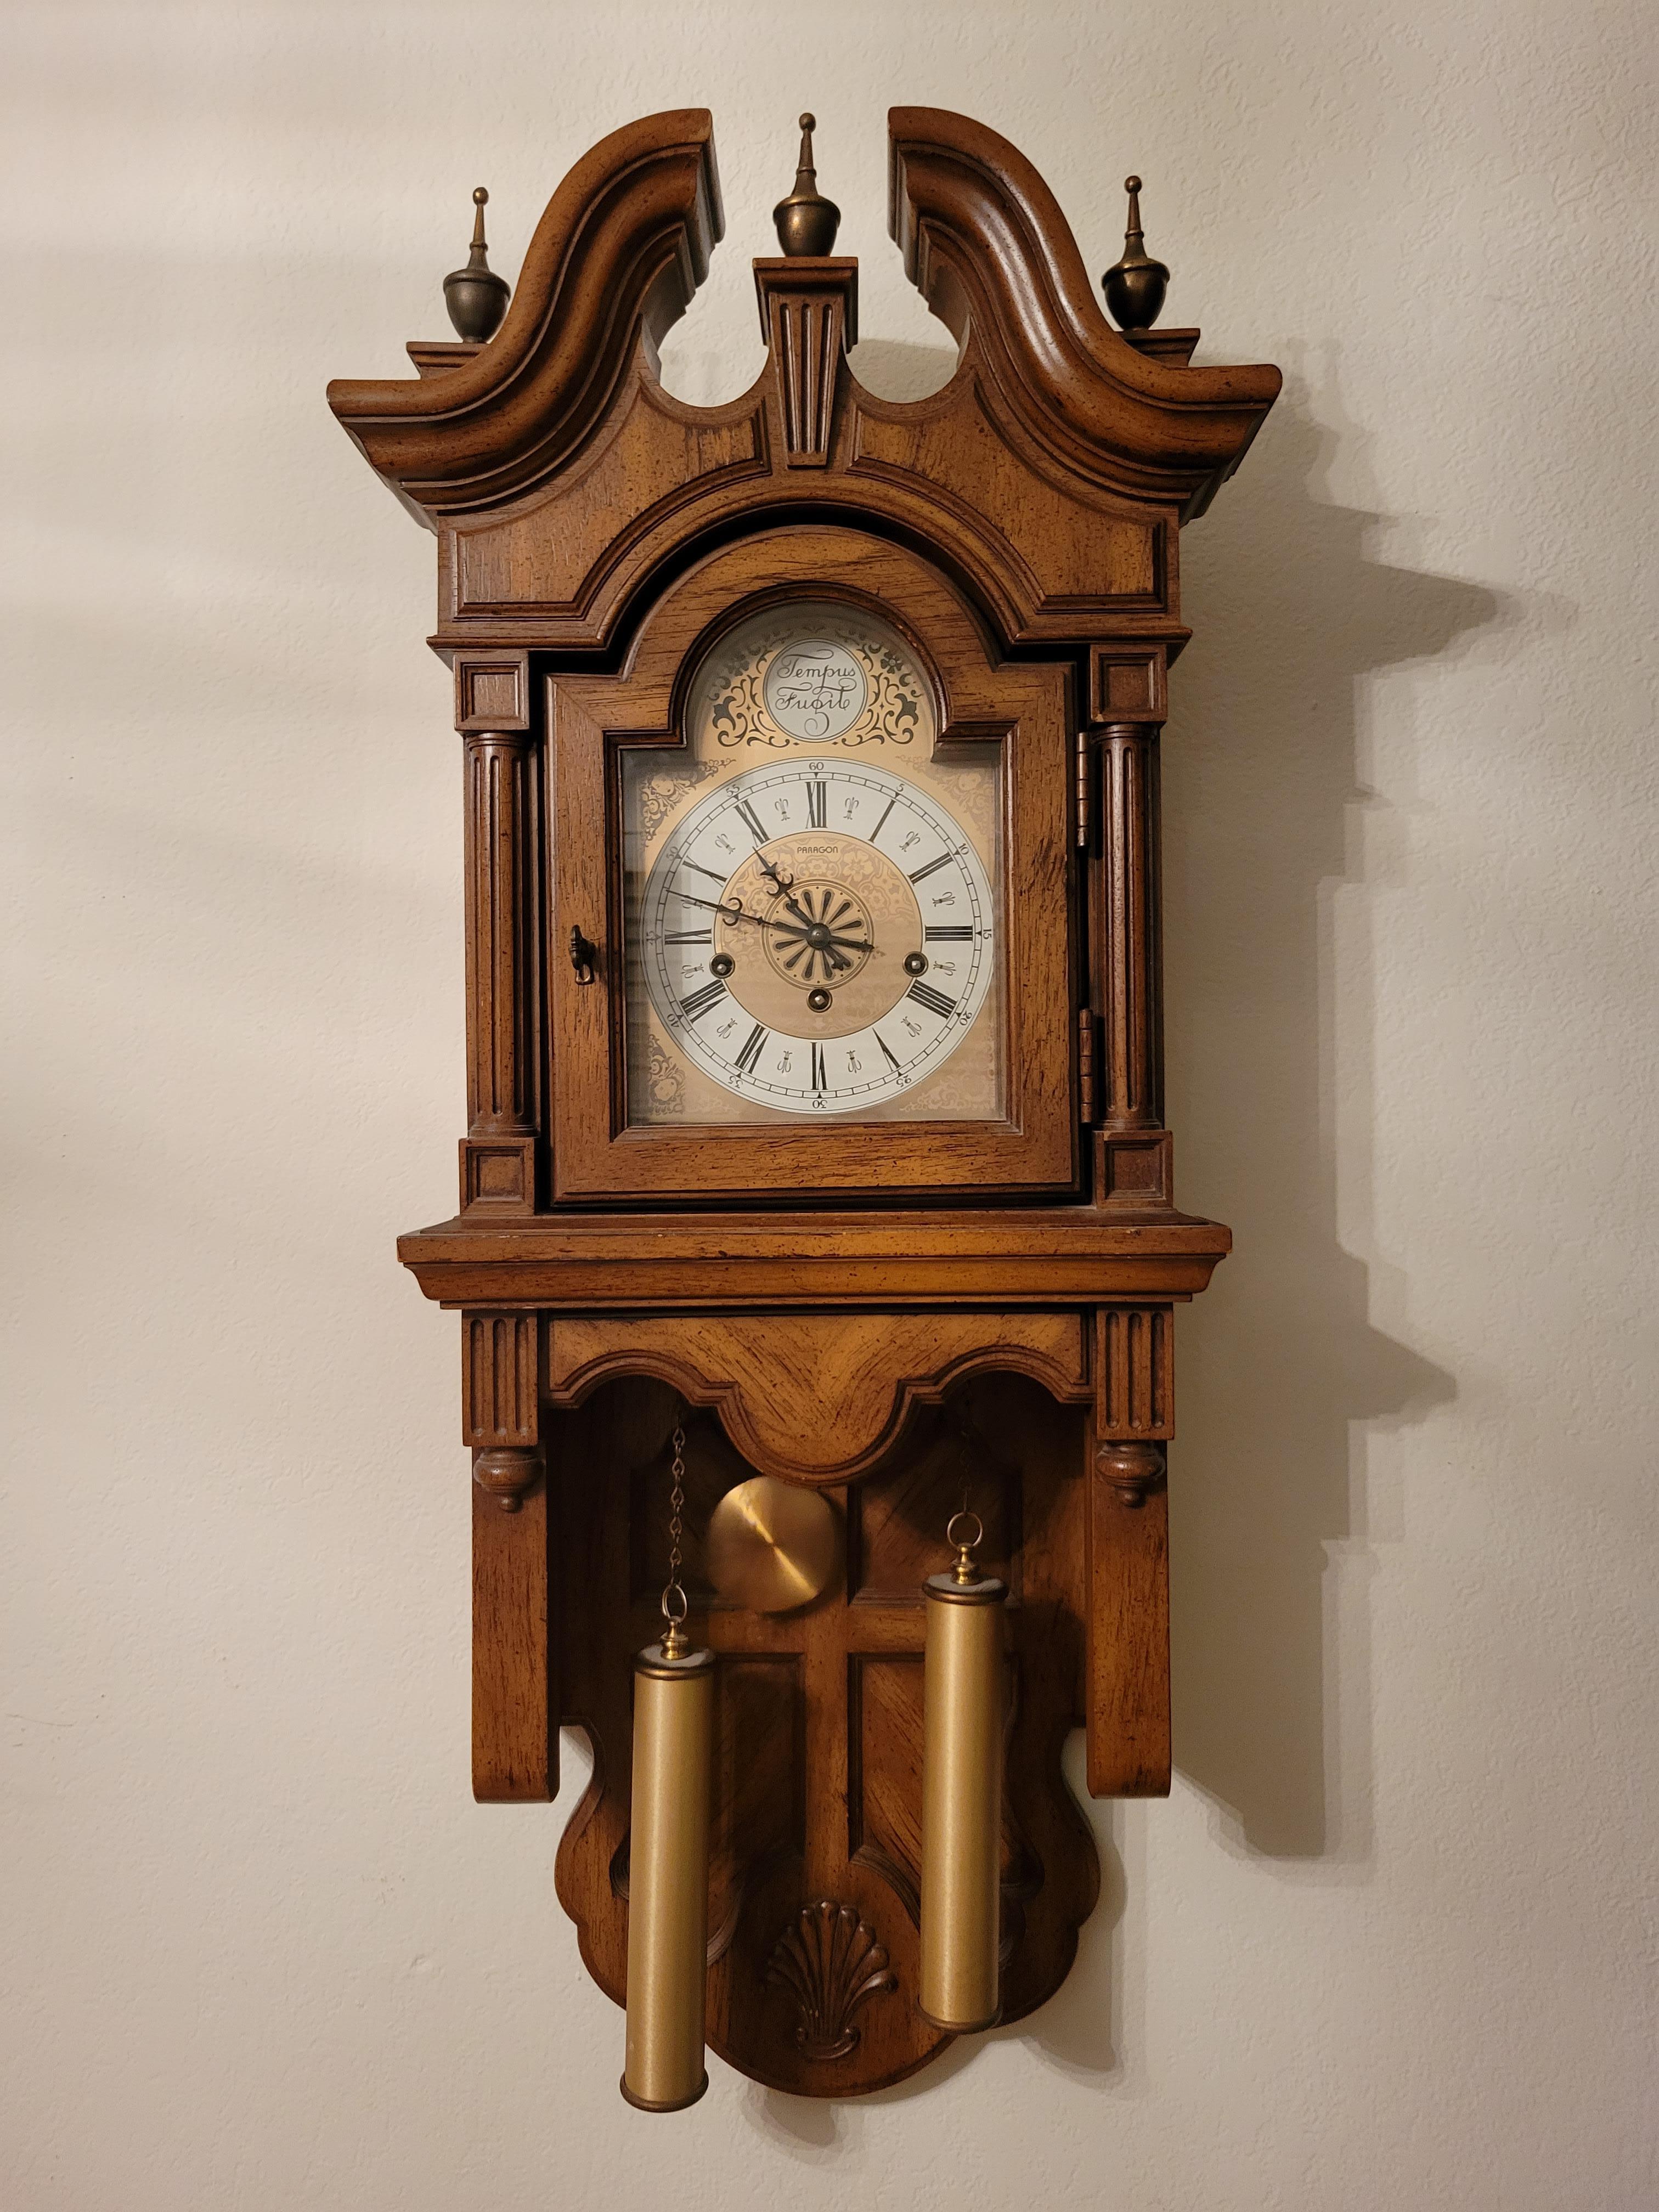 Horloge murale Vintage Paragon avec mouvement Franz Hermle avec un beau carillon de Westminster. Il sonne 4 notes à 15 minutes, 8 notes à 30 minutes, 12 notes à 45 minutes et 16 notes à l'heure.  Le mouvement se termine par une clé. Les poids